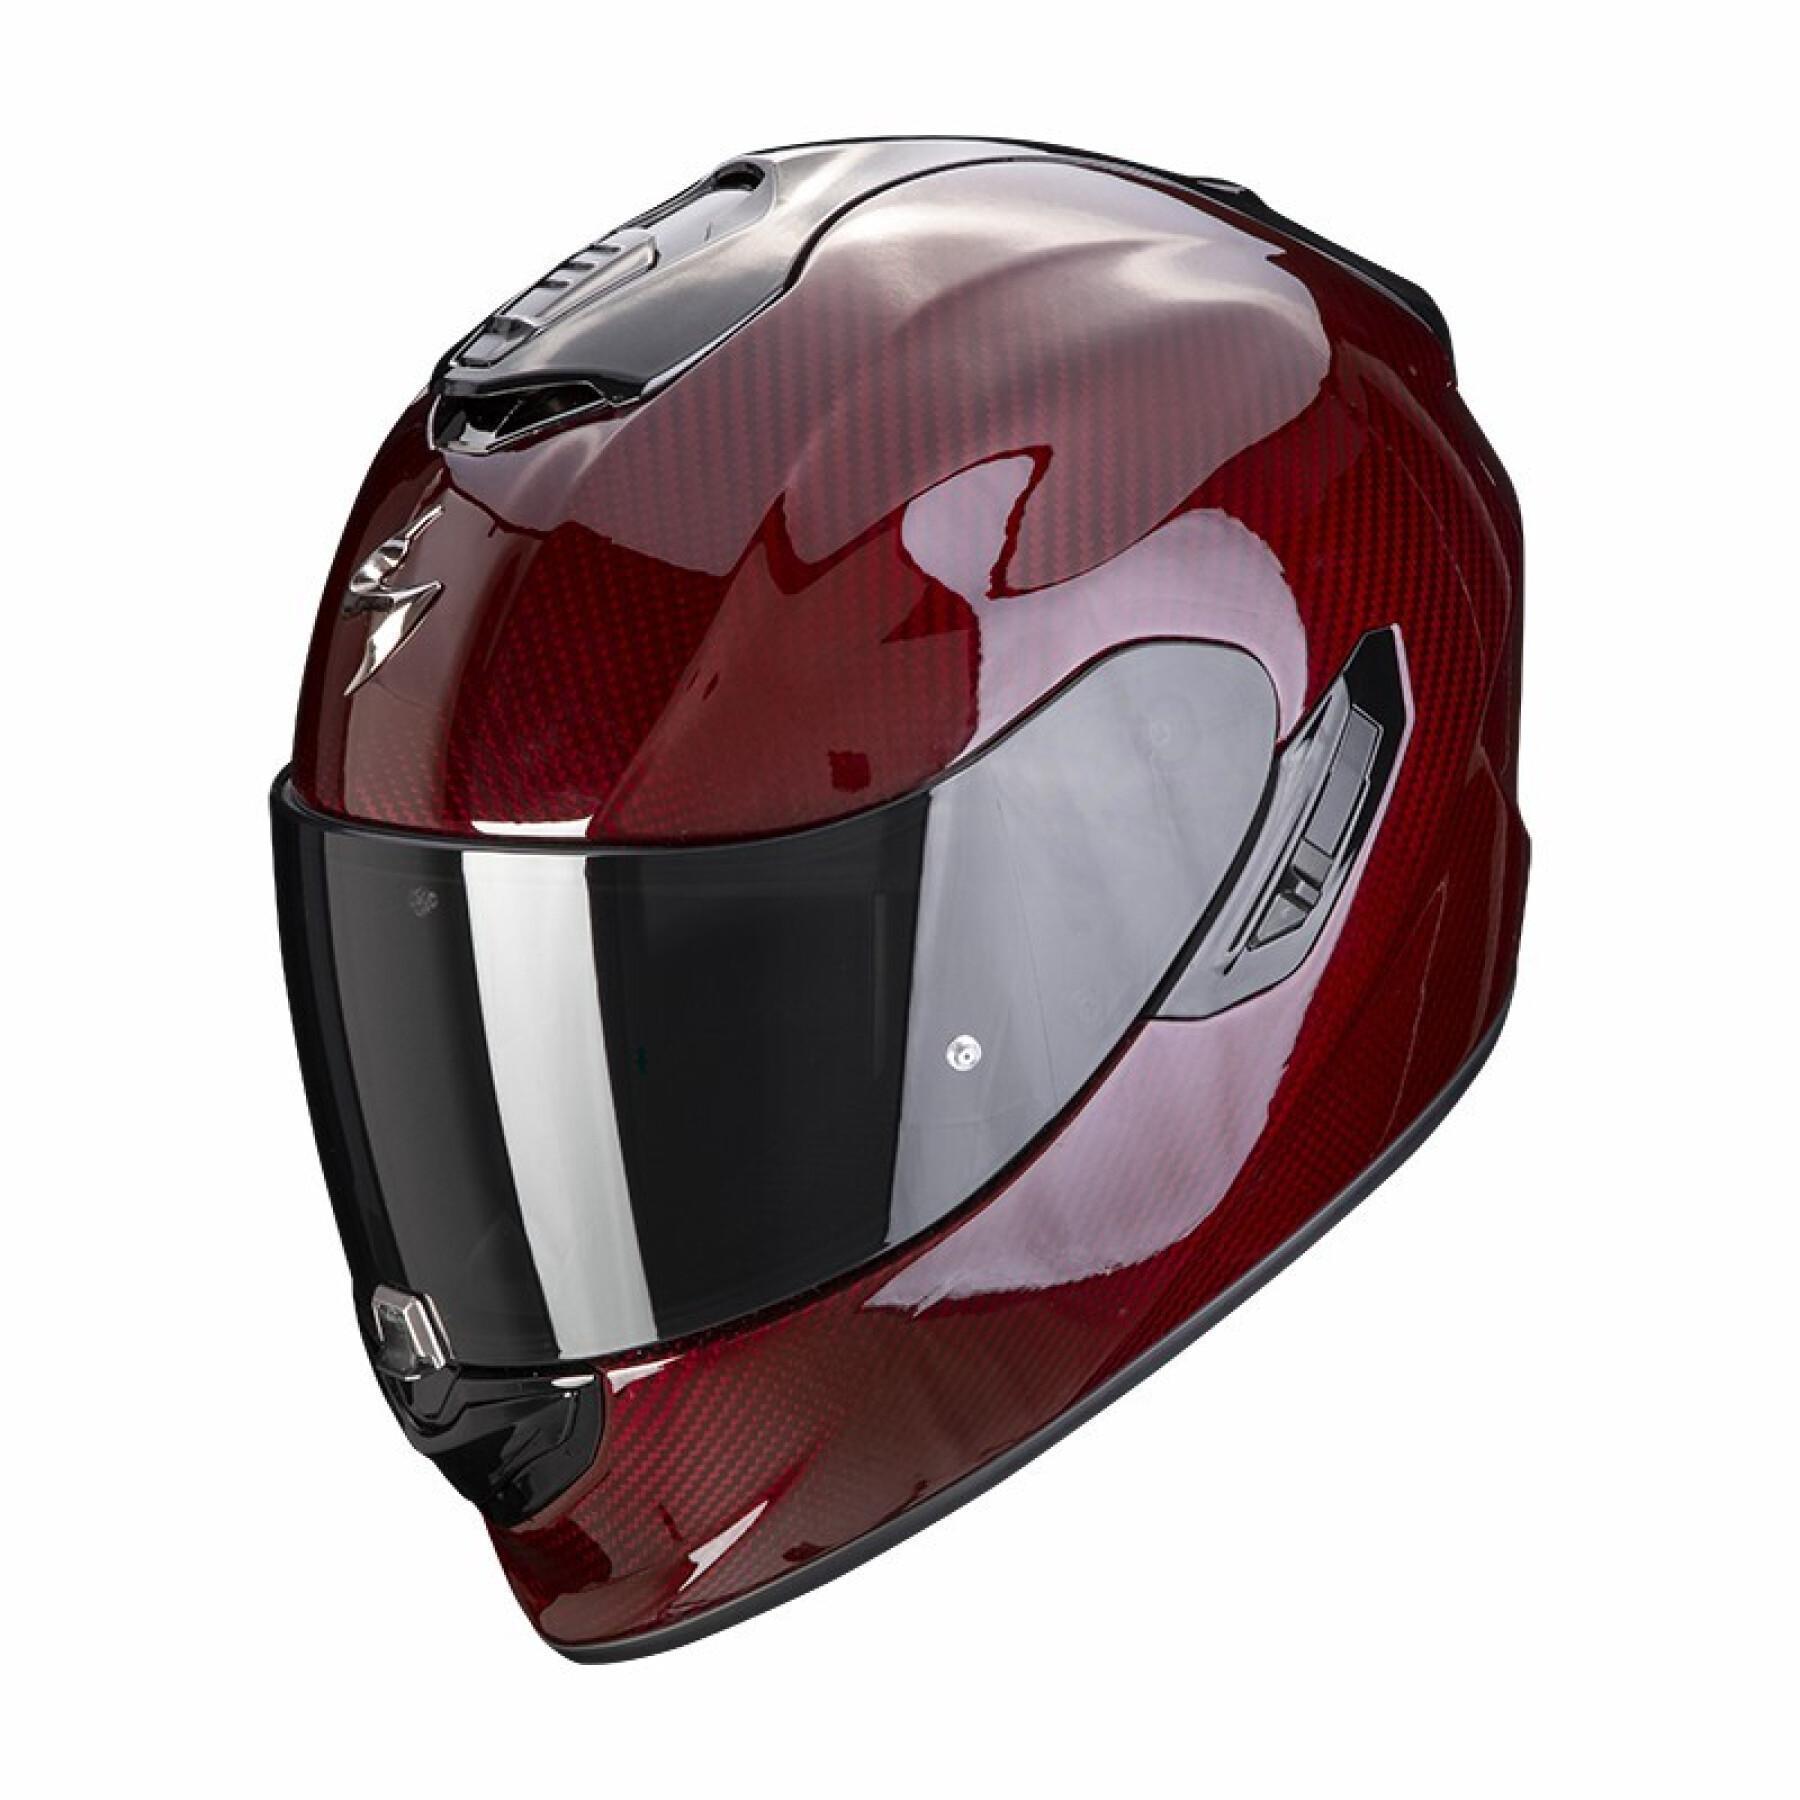 Kask motocyklowy z pełną twarzą Scorpion Exo-1400 Evo Carbon Air Solid ECE 22-06